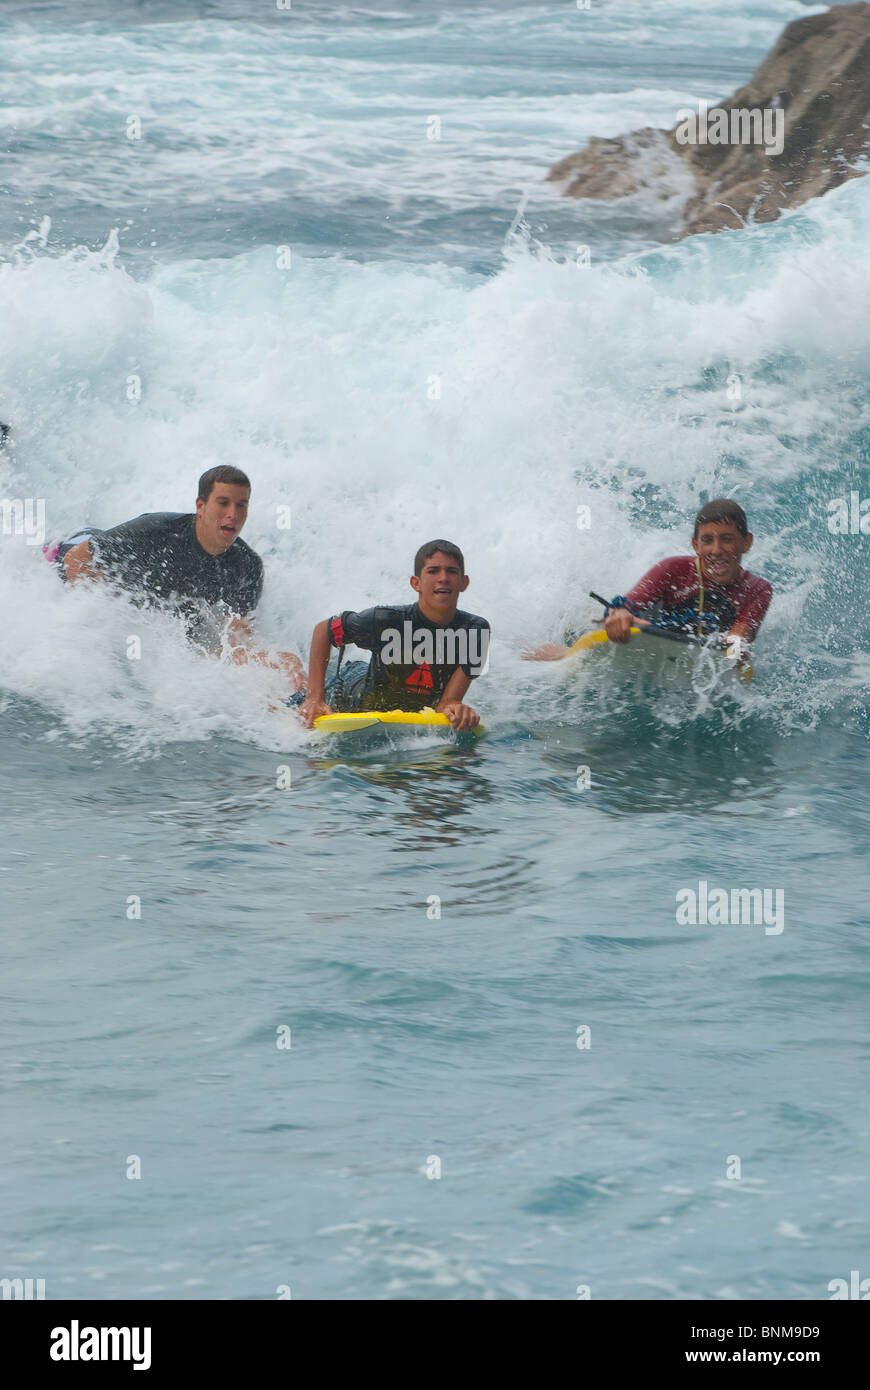 Les adolescents espagnols le bodyboard sur les vagues de l'océan Atlantique dans la Maceta, El Hierro, Îles Canaries Banque D'Images